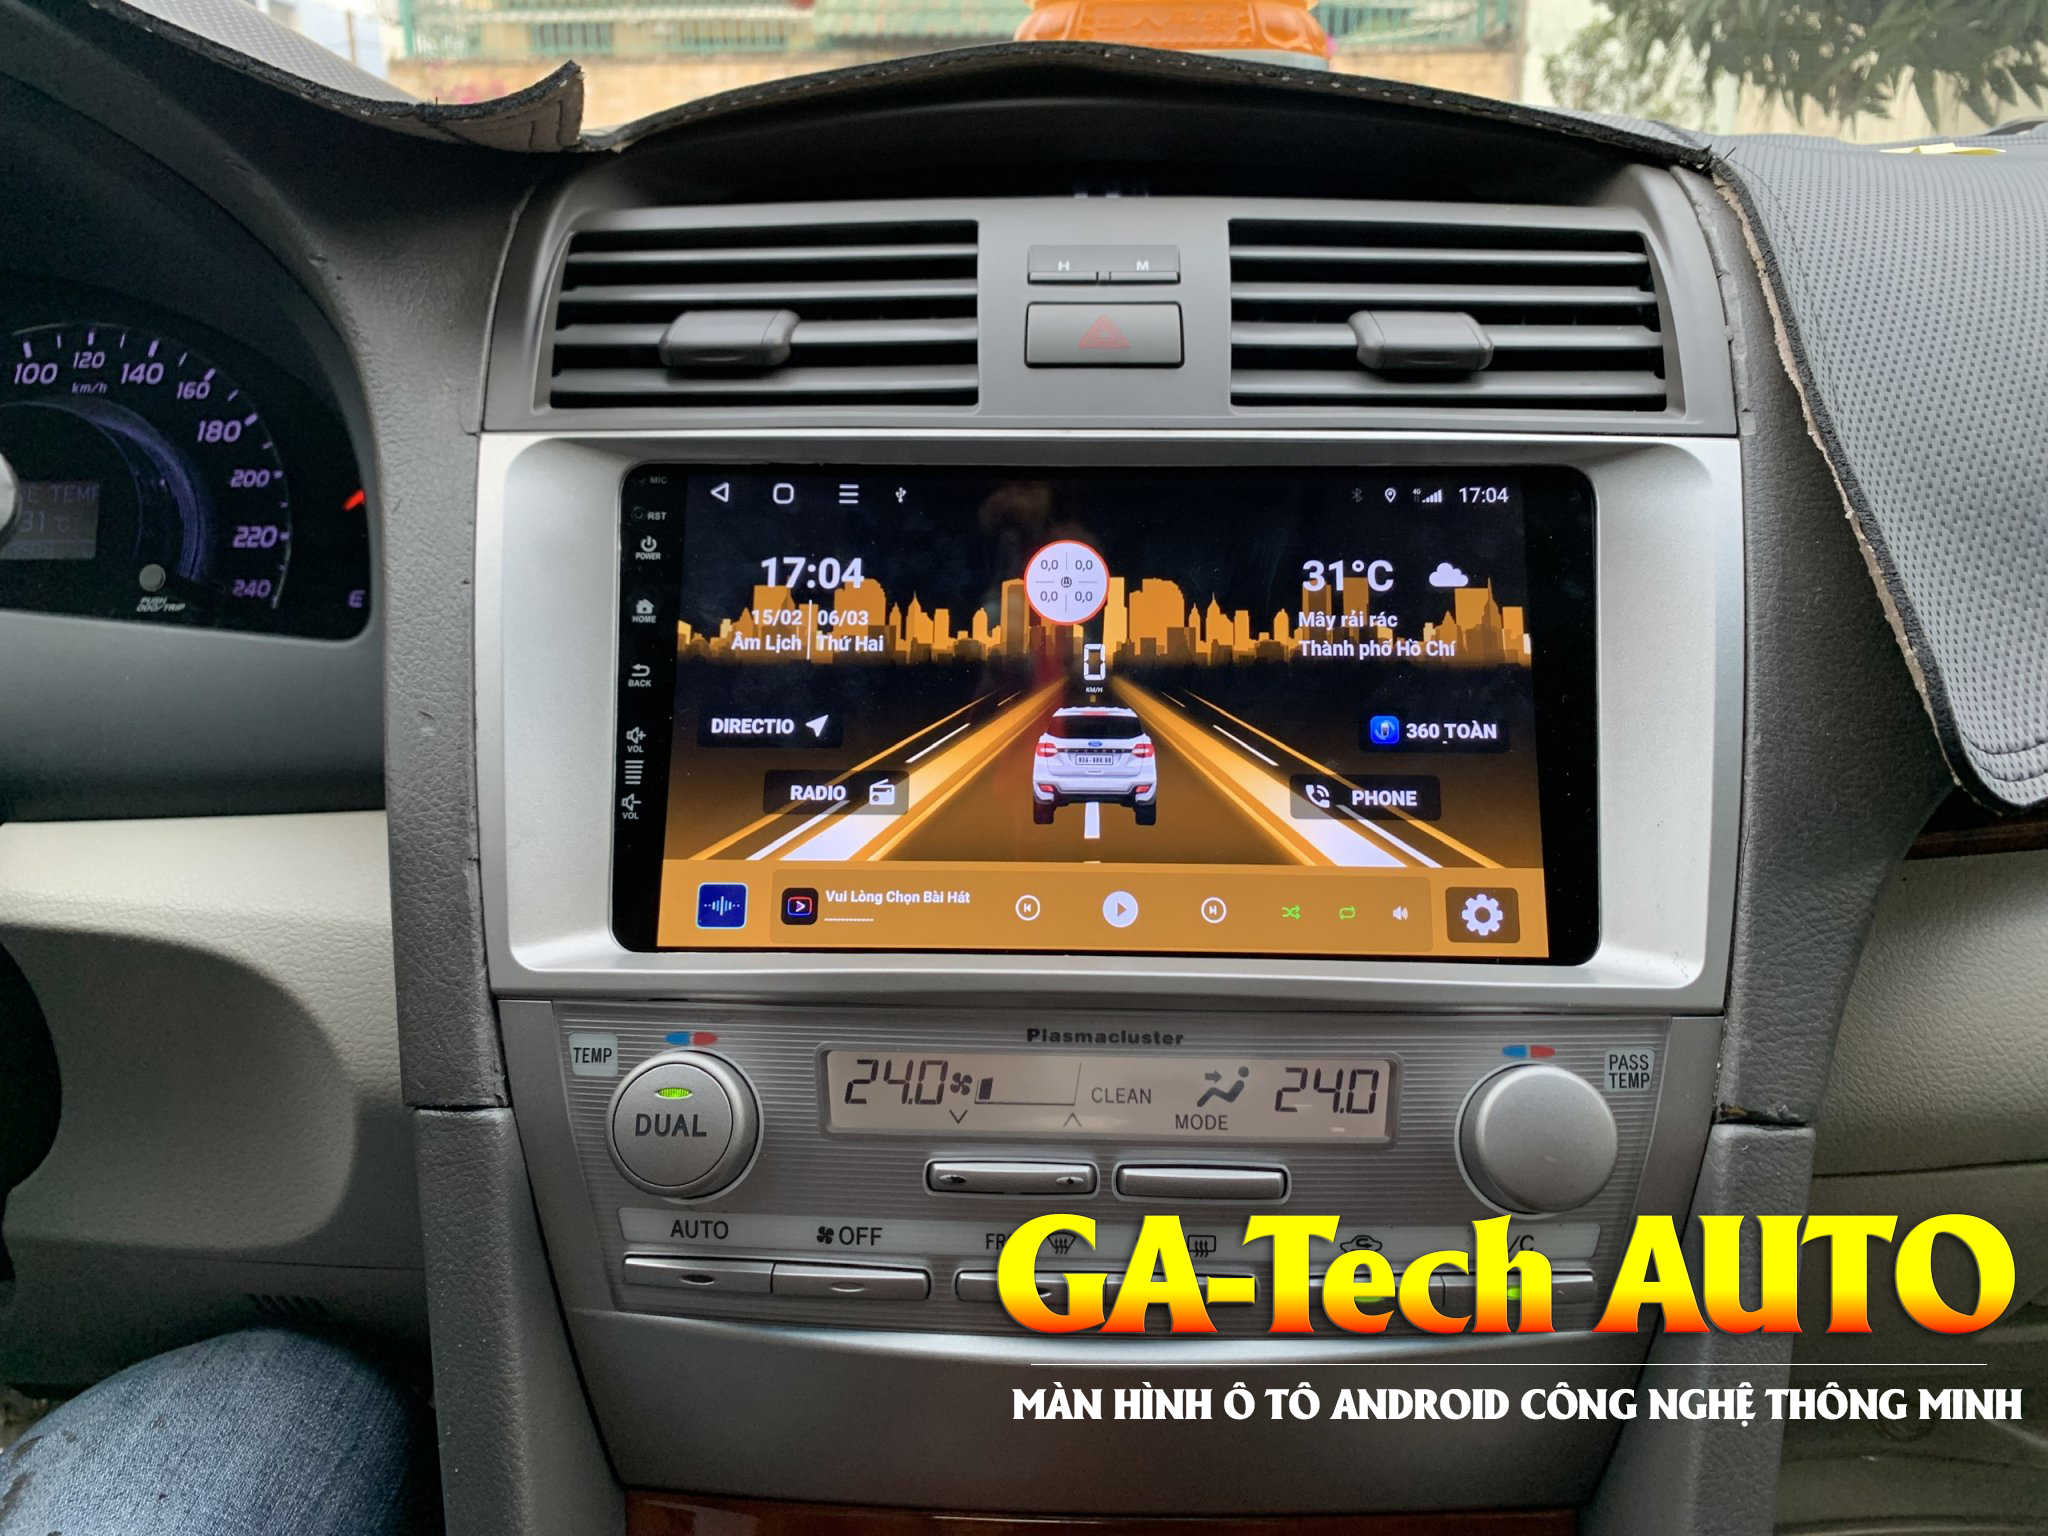 Lắp màn hình Ô tô Android thông minh tại Gatech Auto